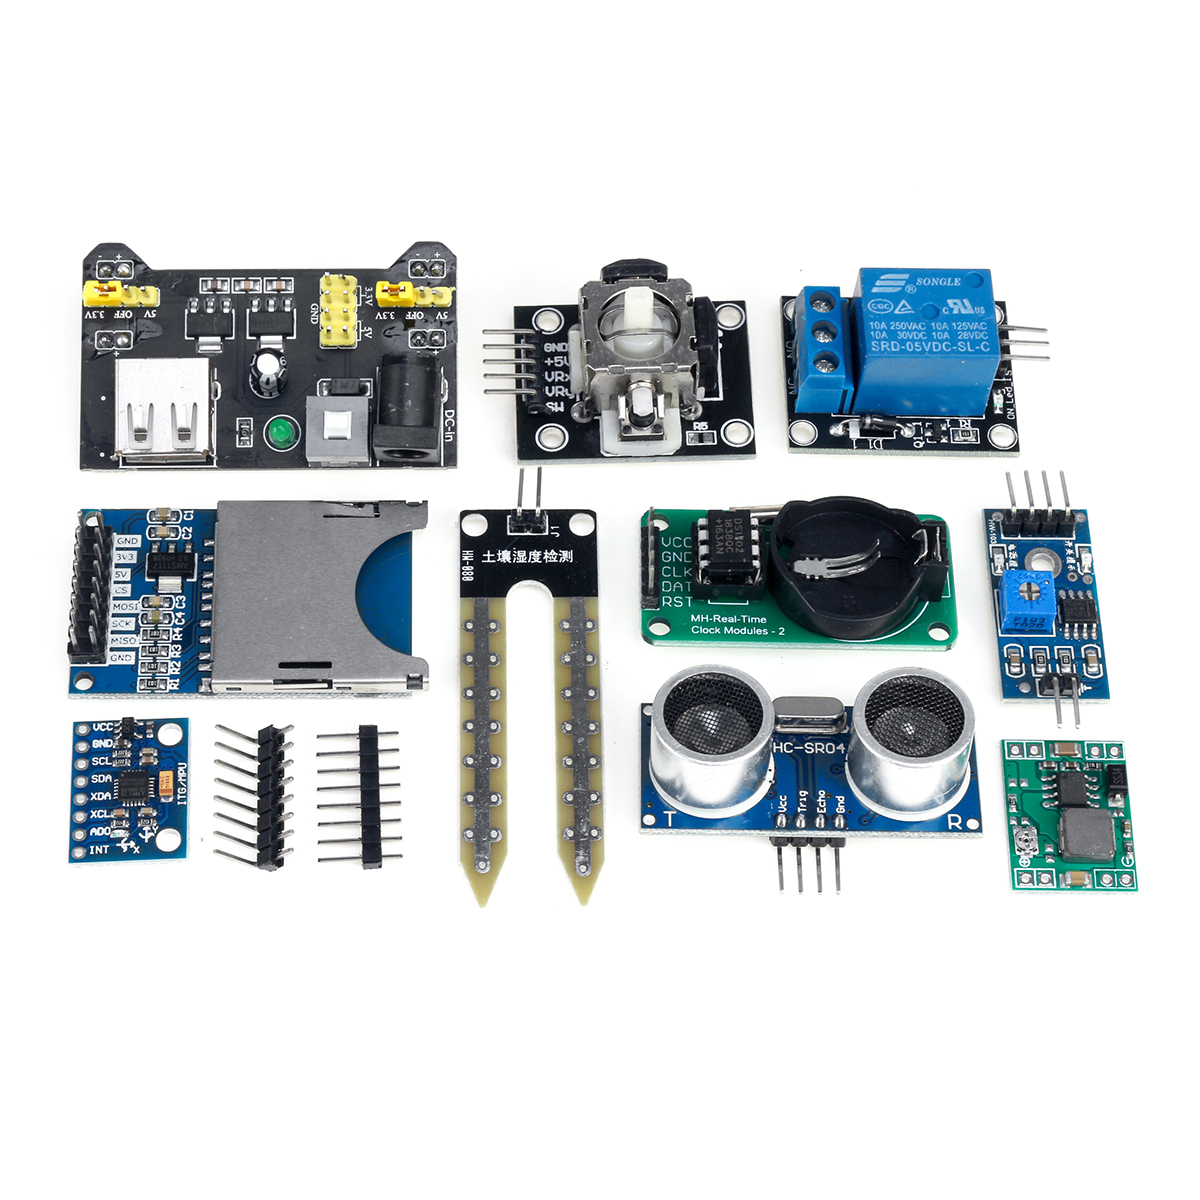 45-IN-137-IN-1-Sensor-Module-Starter-Kits-Set-For-Arduino-Raspberry-Pi-Education-Bag-Package-1619901-7